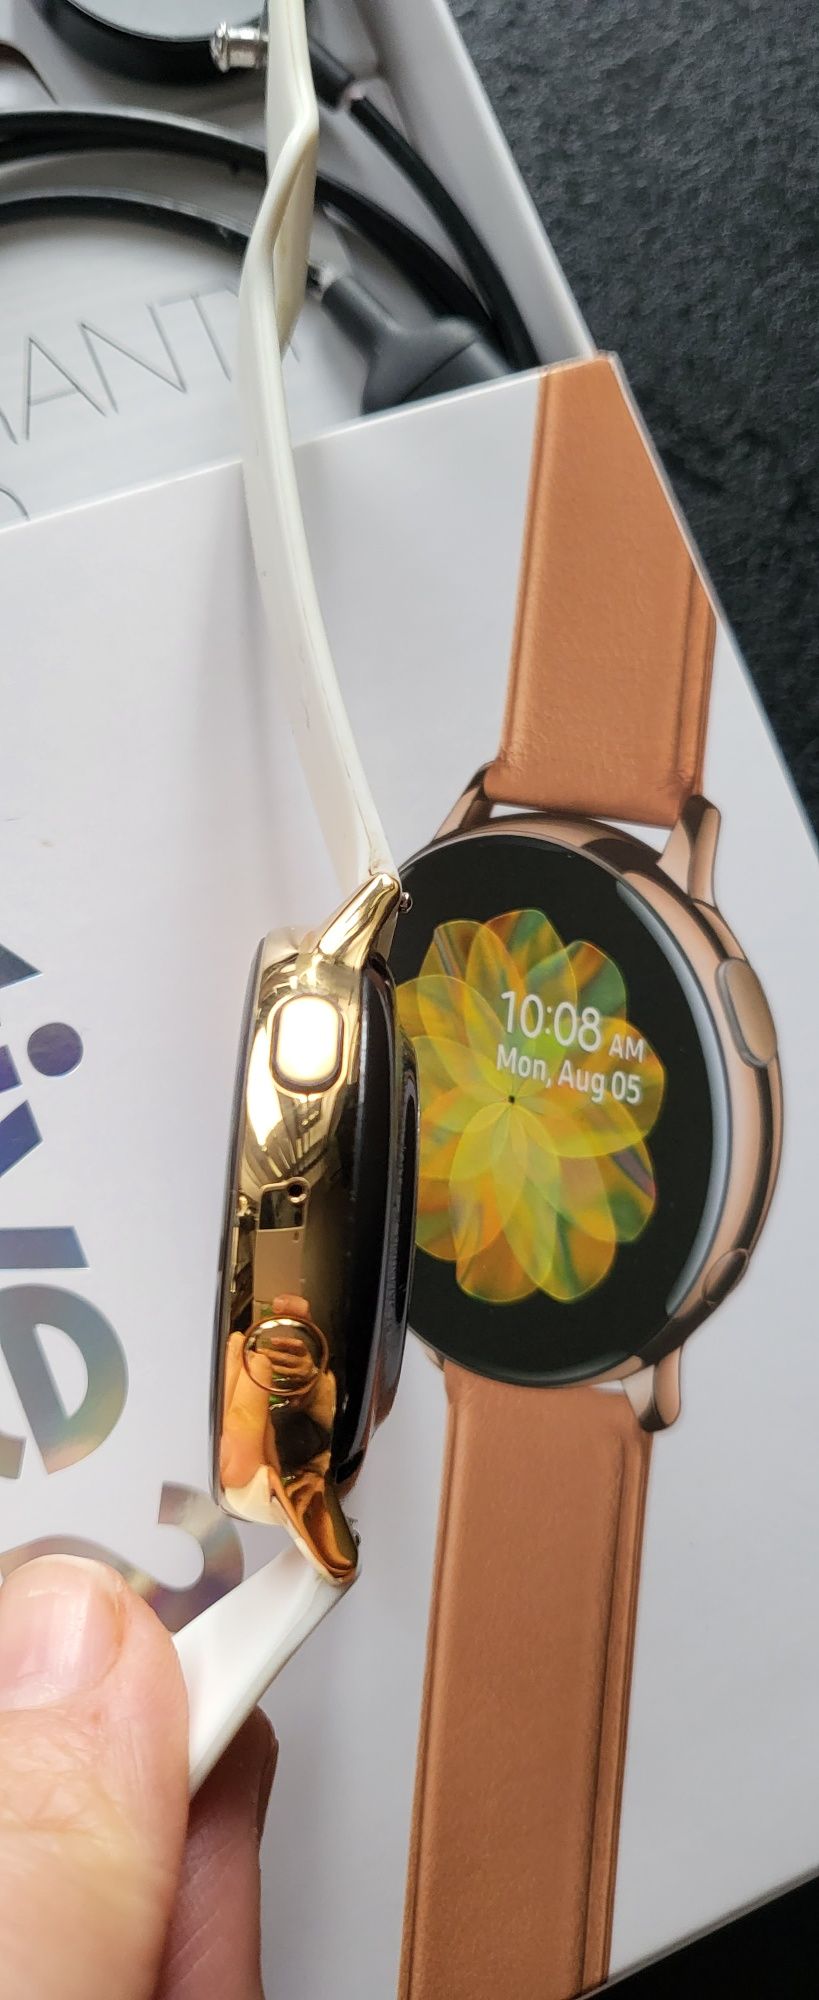 Samsung Watch Active 2 - 44 mm, gold